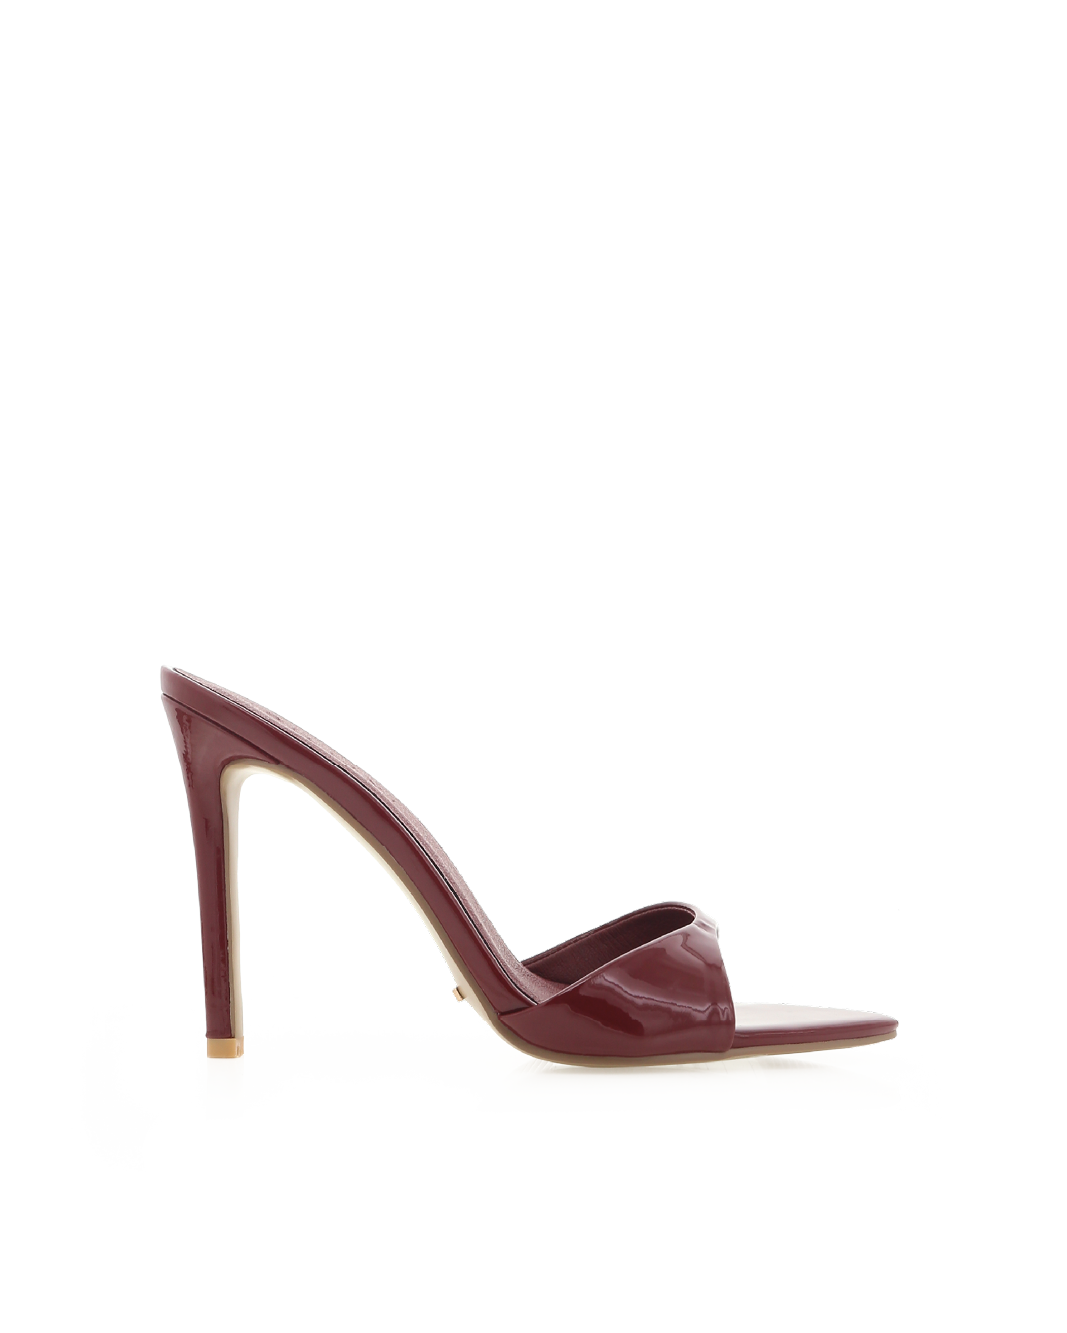 Buy Women Maroon Heels Online - 240189 | Van Heusen